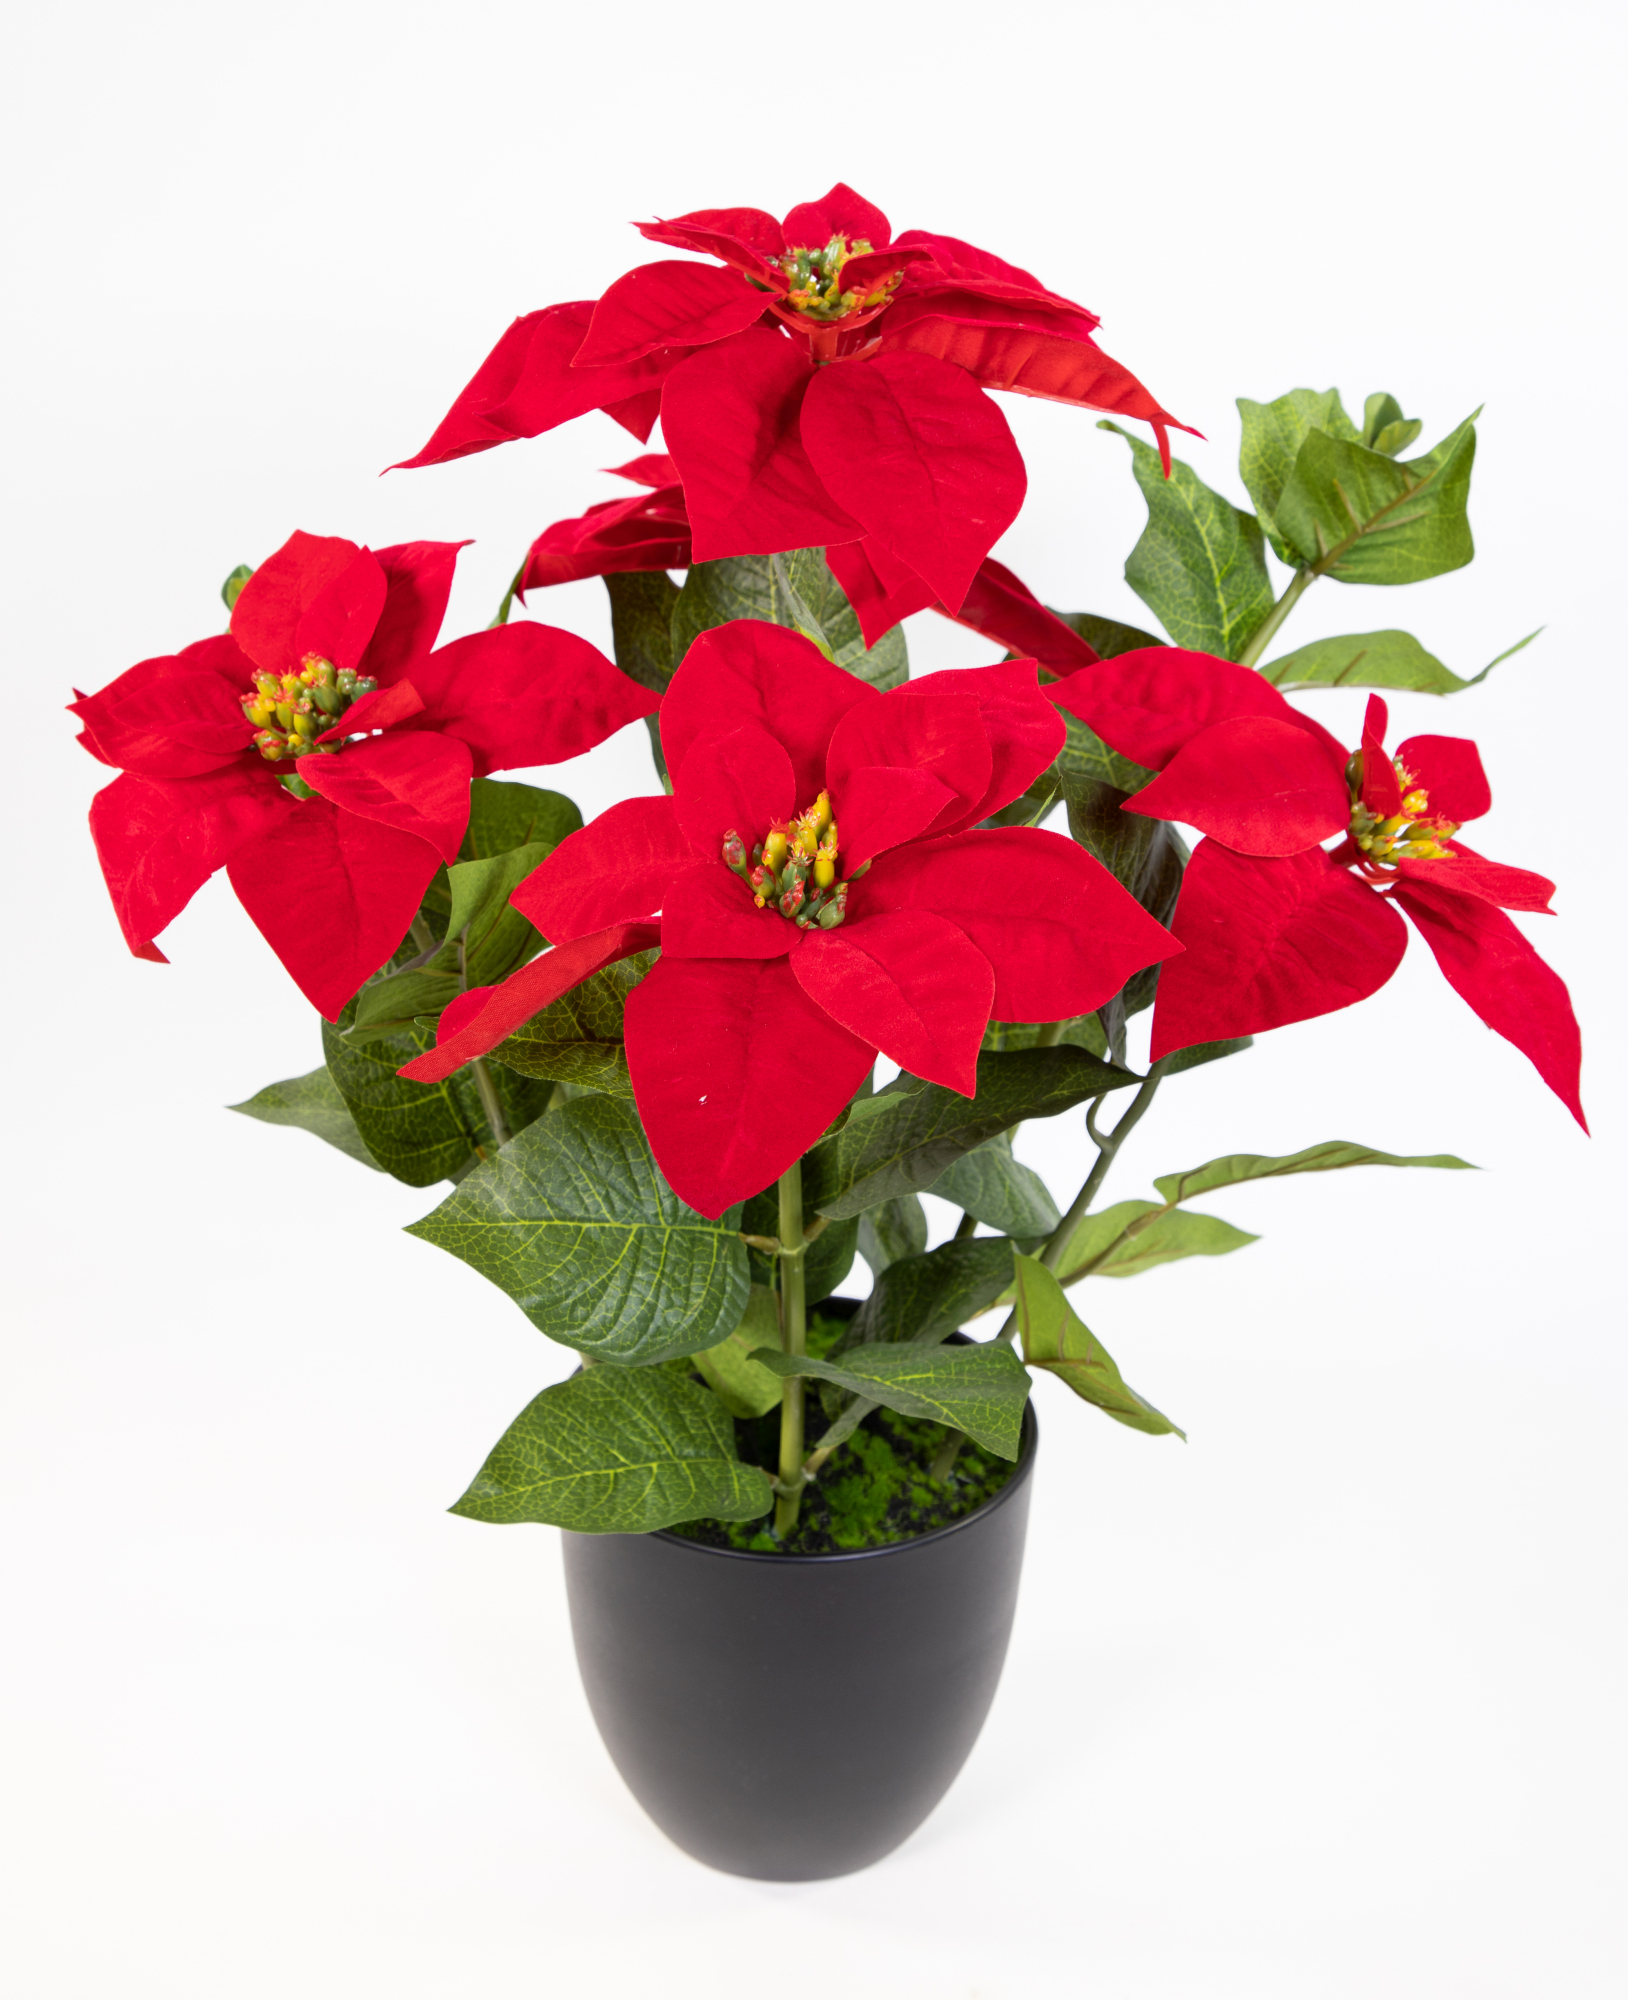 Großer Weihnachtsstern 56cm rot im schwarzen Topf DP künstliche Blume Kunstpflanze Kunstblumen Poinsettie